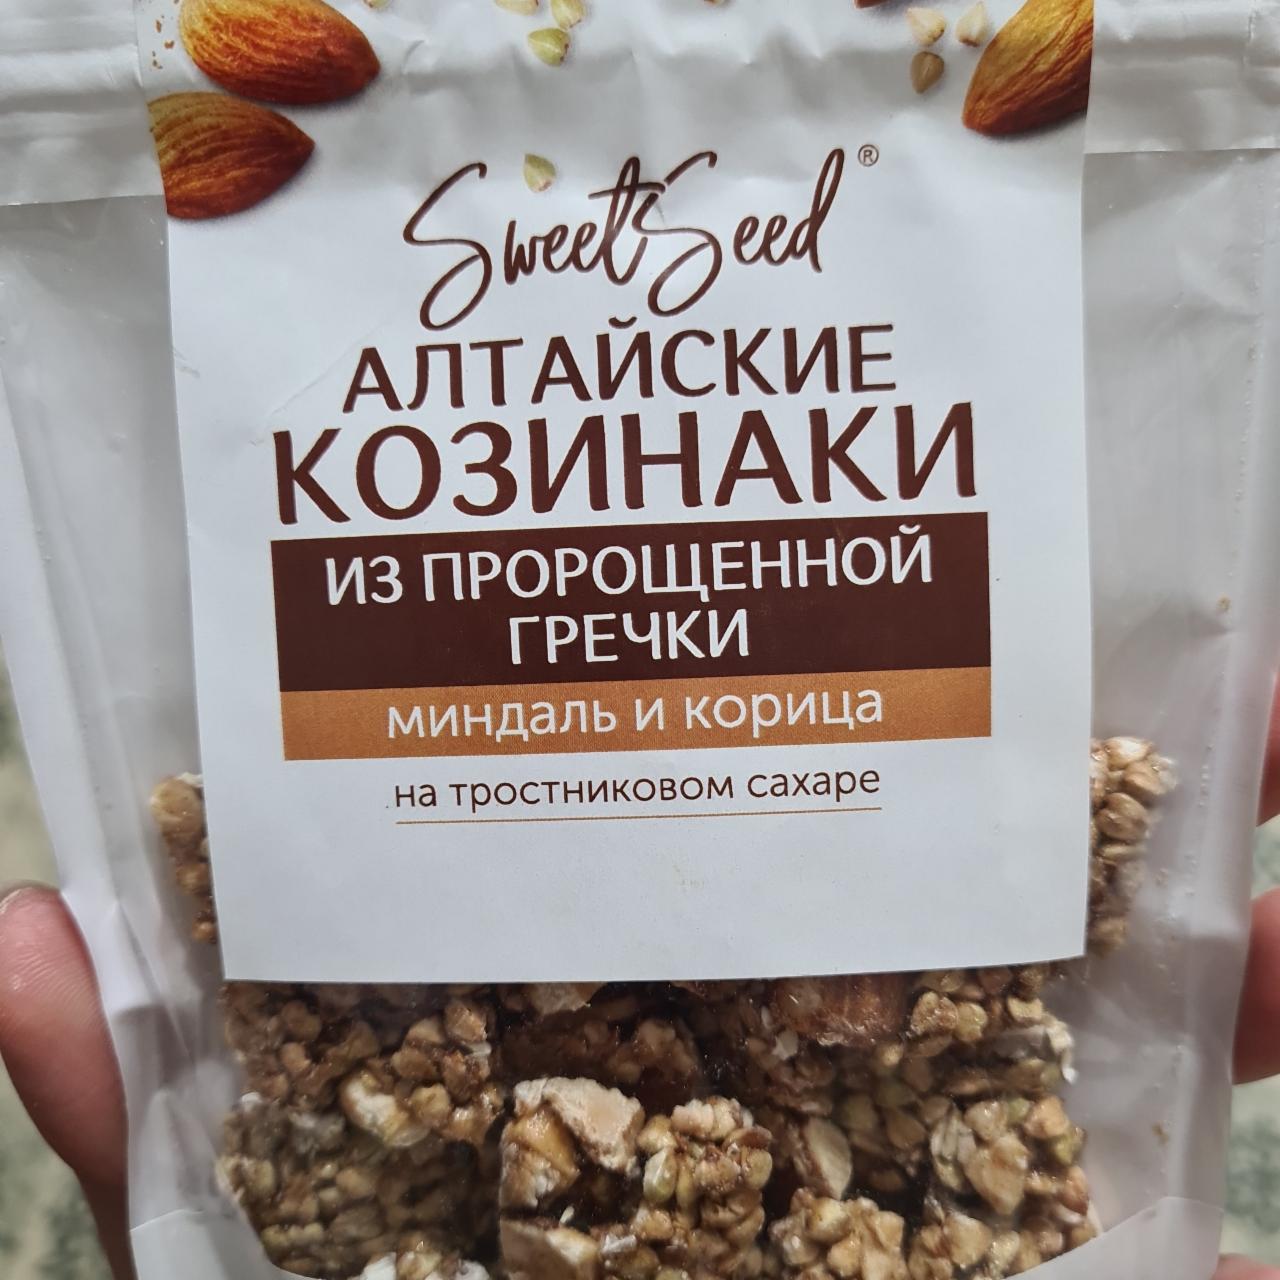 Фото - Козинаки Алтайские из пророщенной гречки с кешью и гвоздикой Sweet Seed